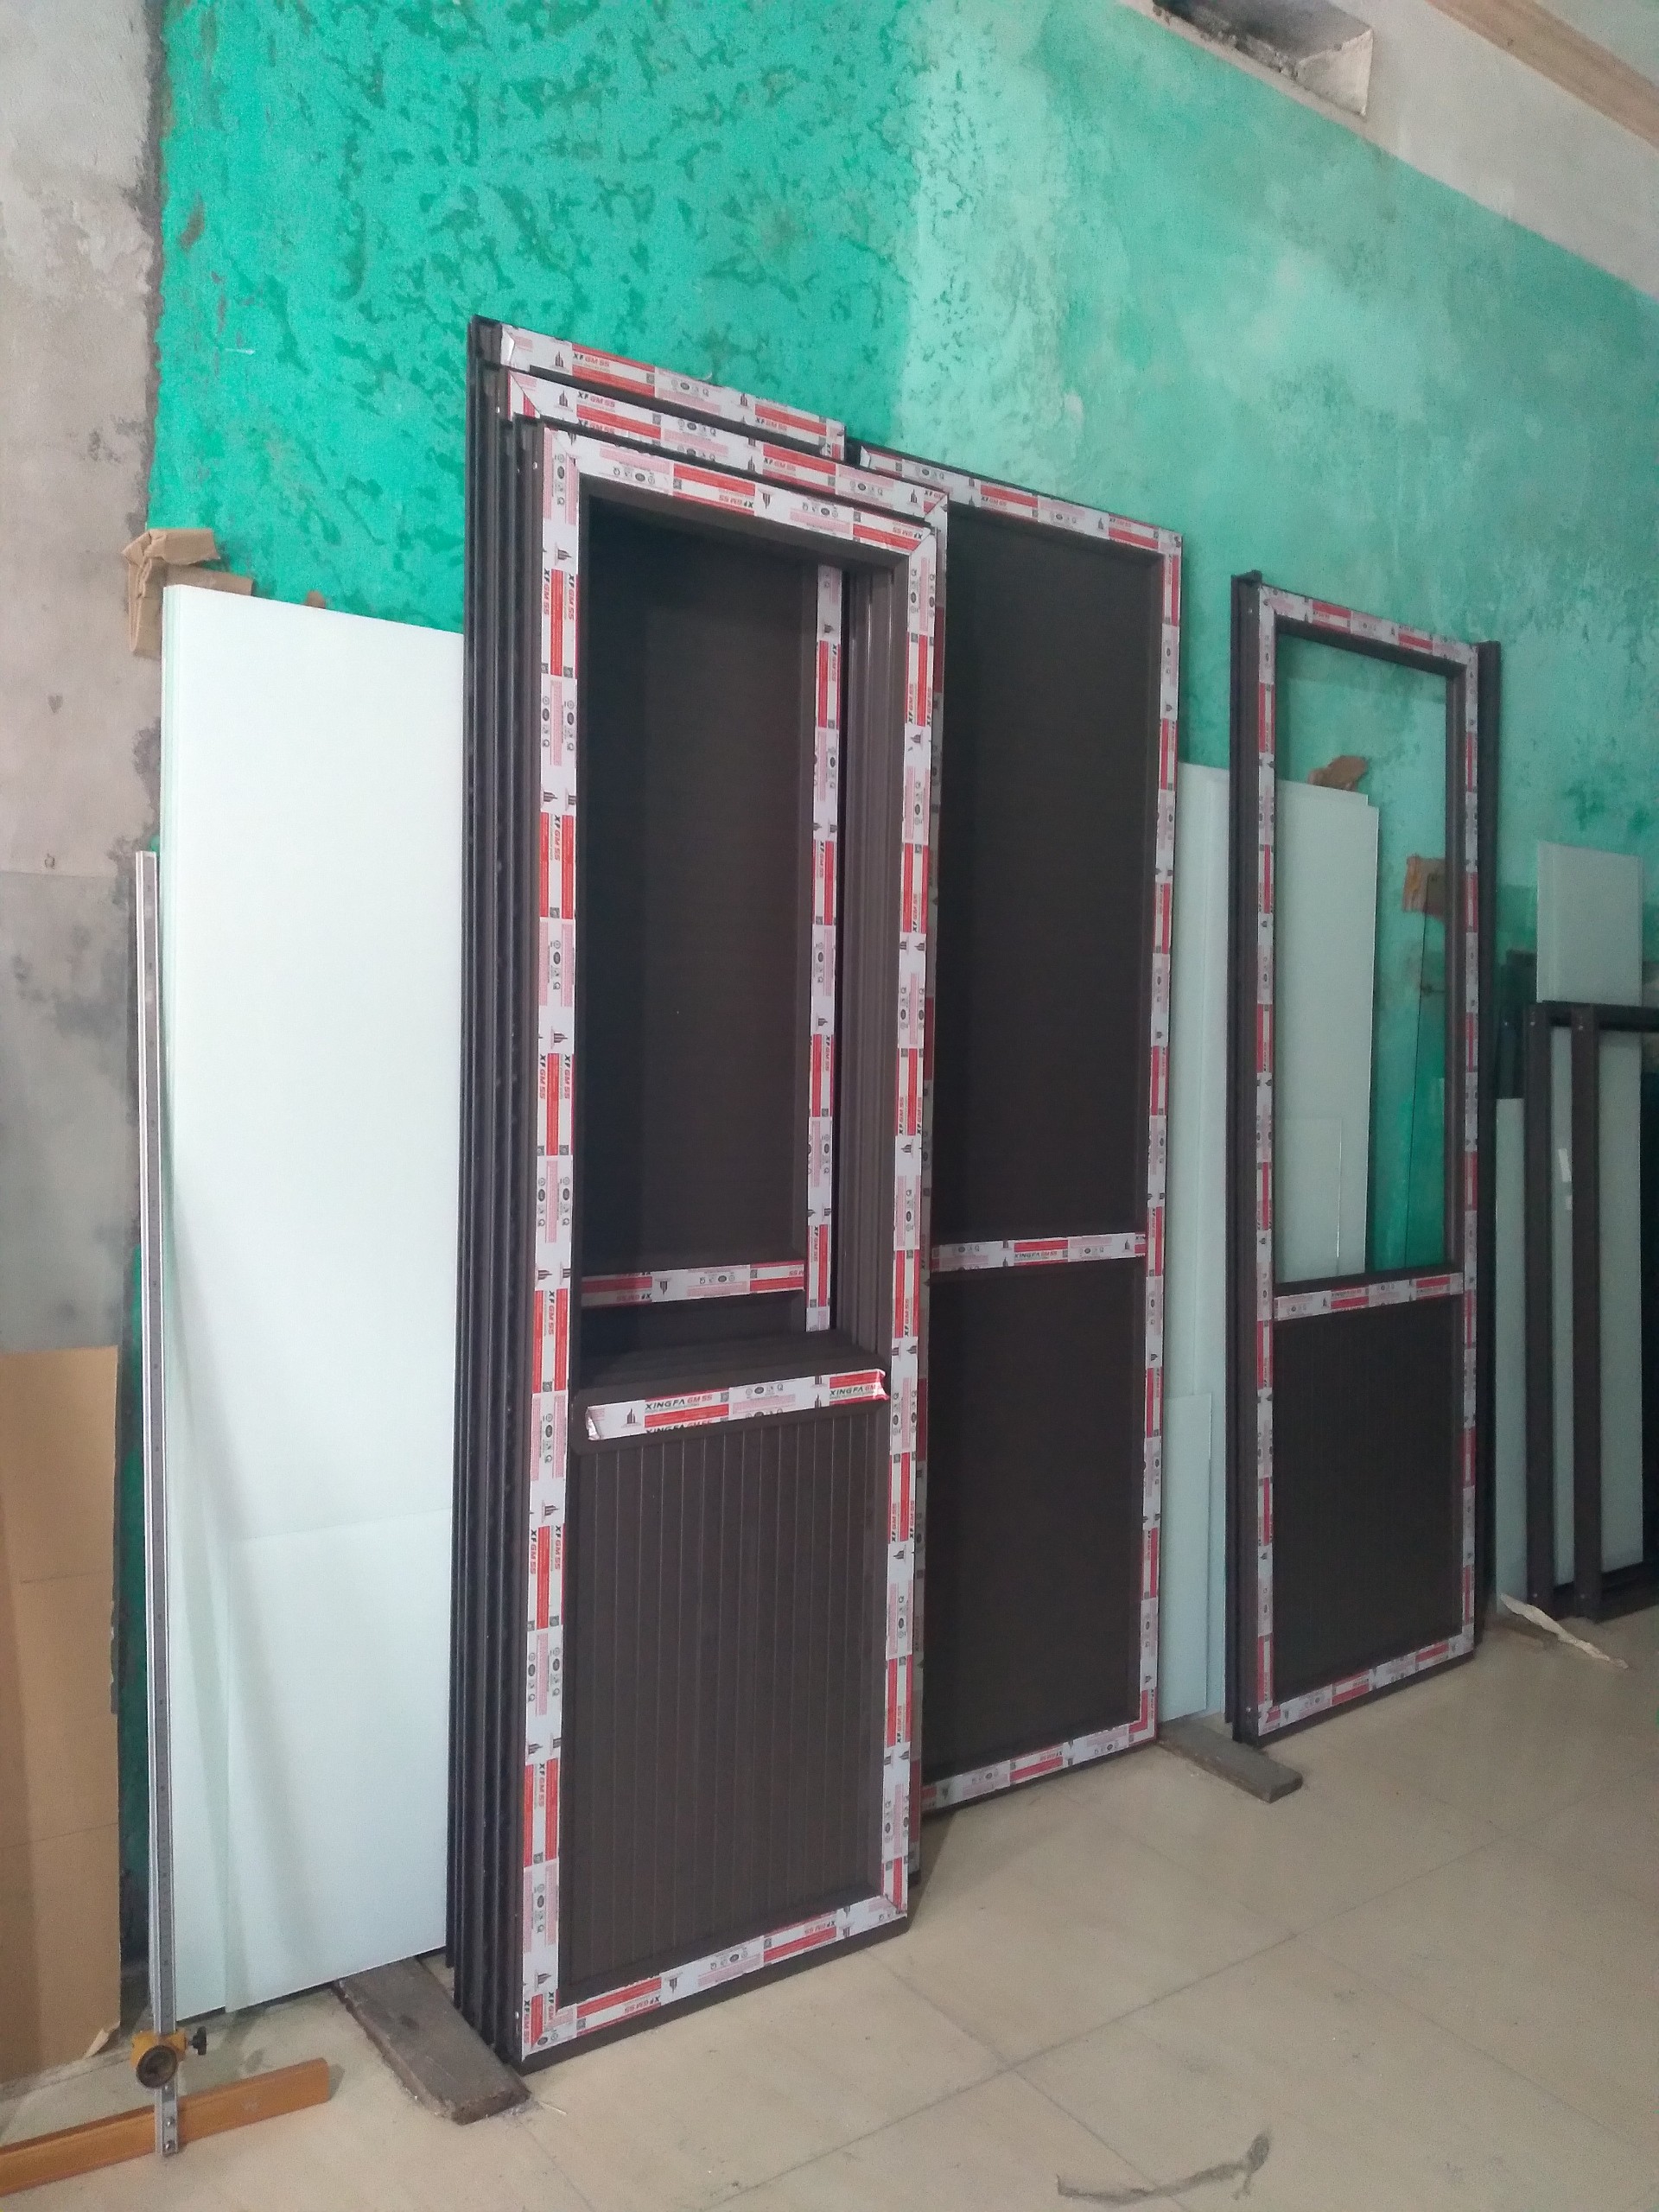 Thi công hệ thống cửa nhôm hệ cho toàn nhà dịch vụ dự án Visip Từ Sơn Bắc Ninh